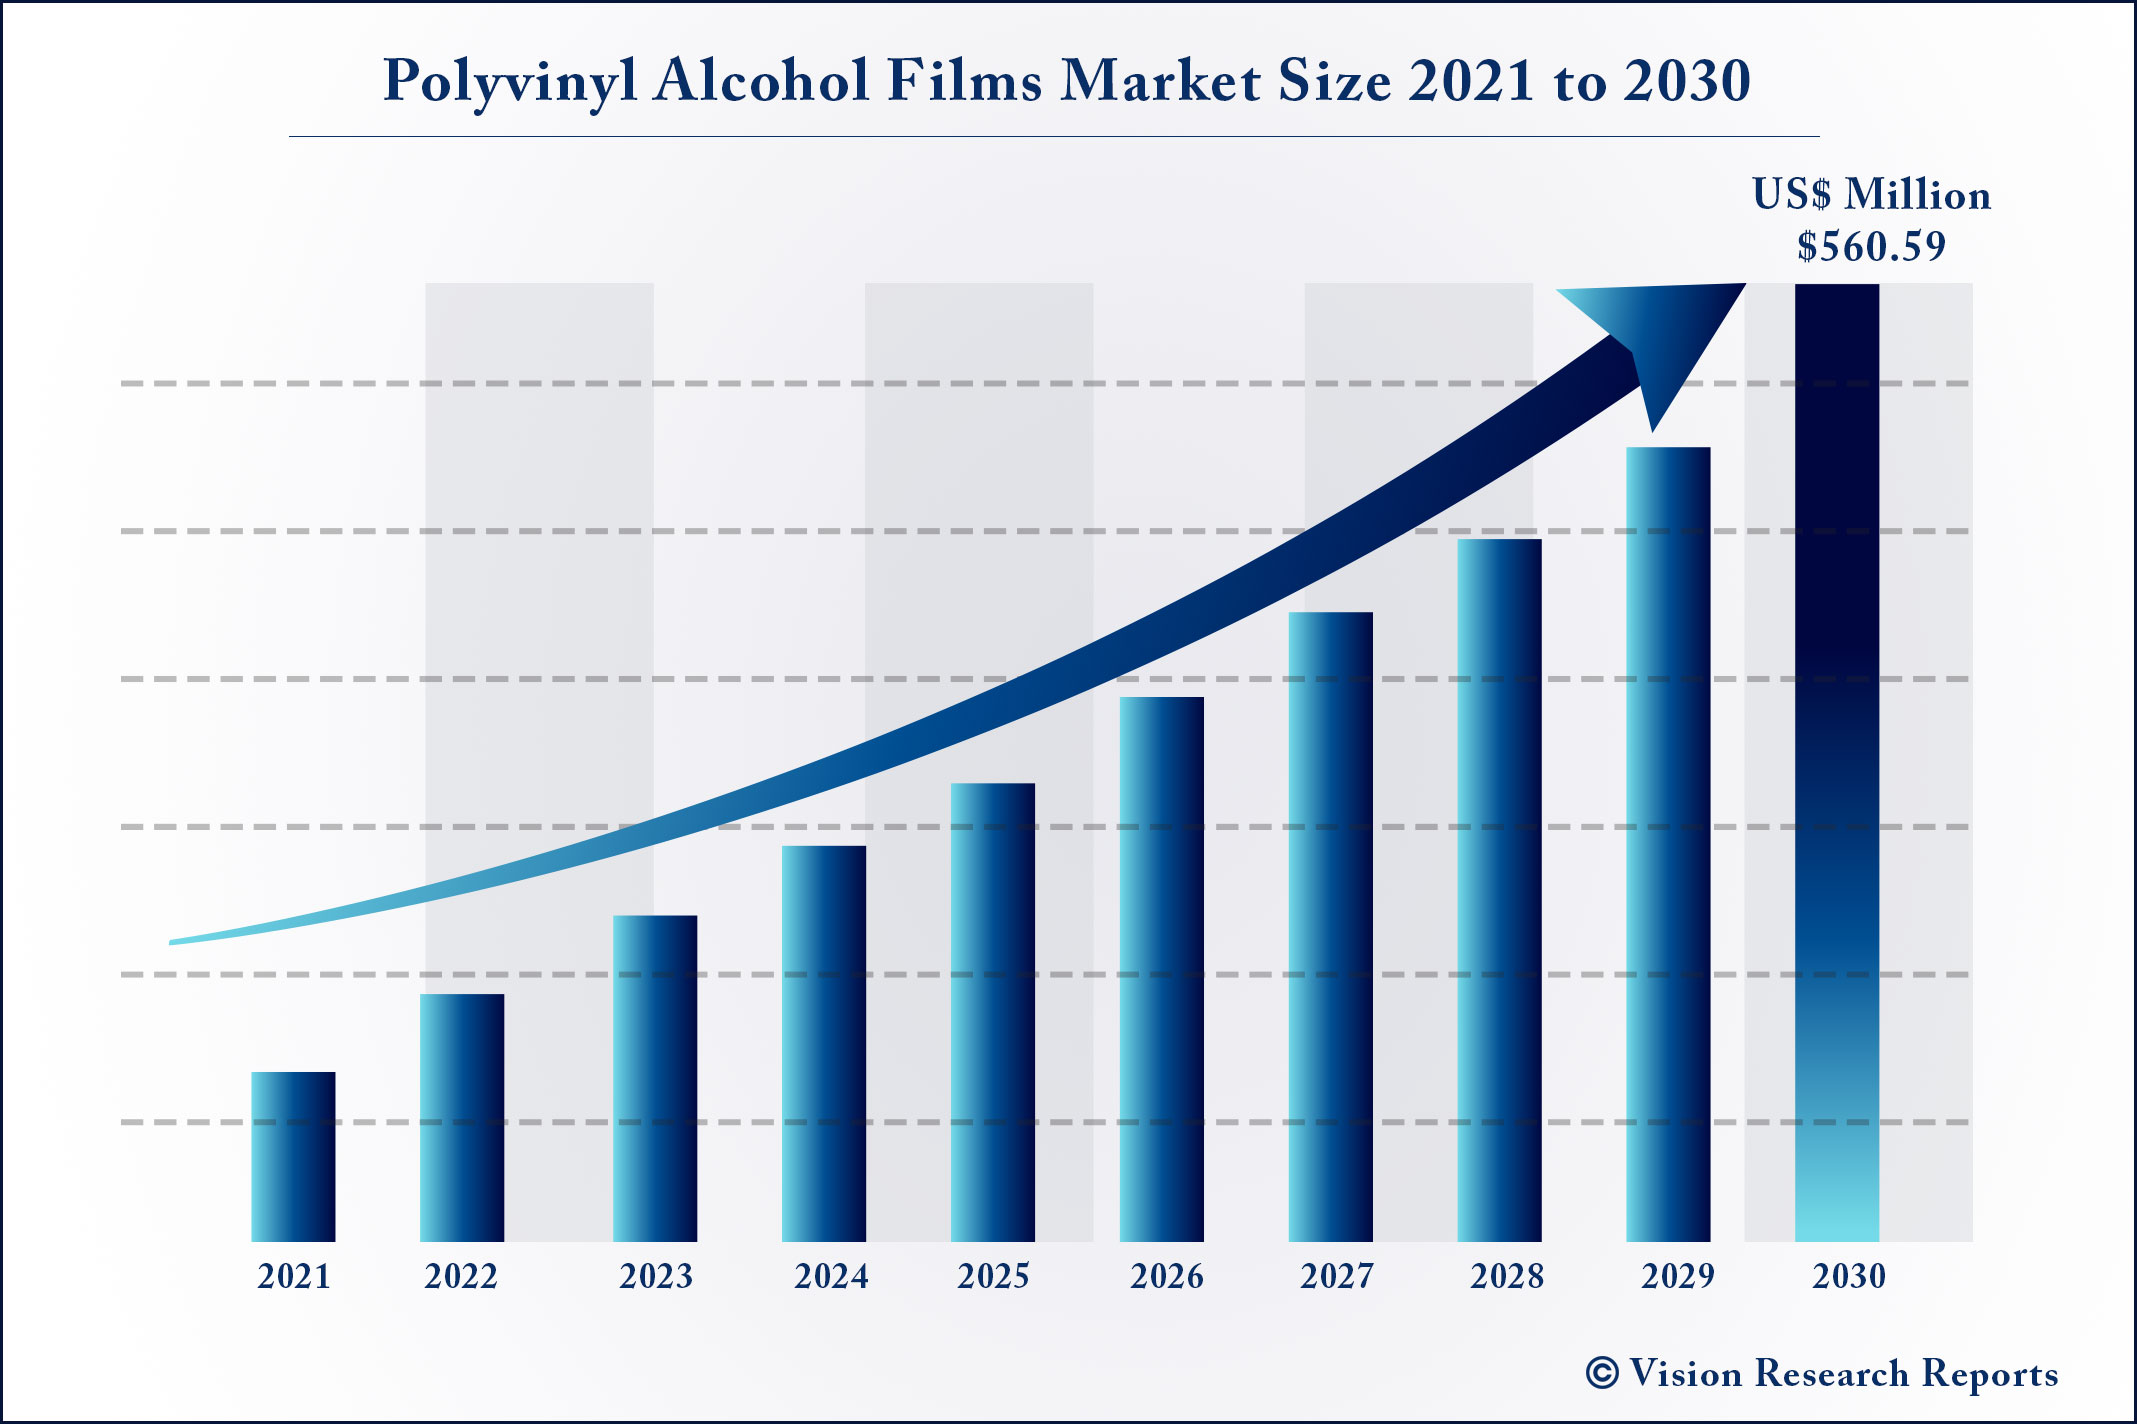 Polyvinyl Alcohol Films Market Size 2021 to 2030